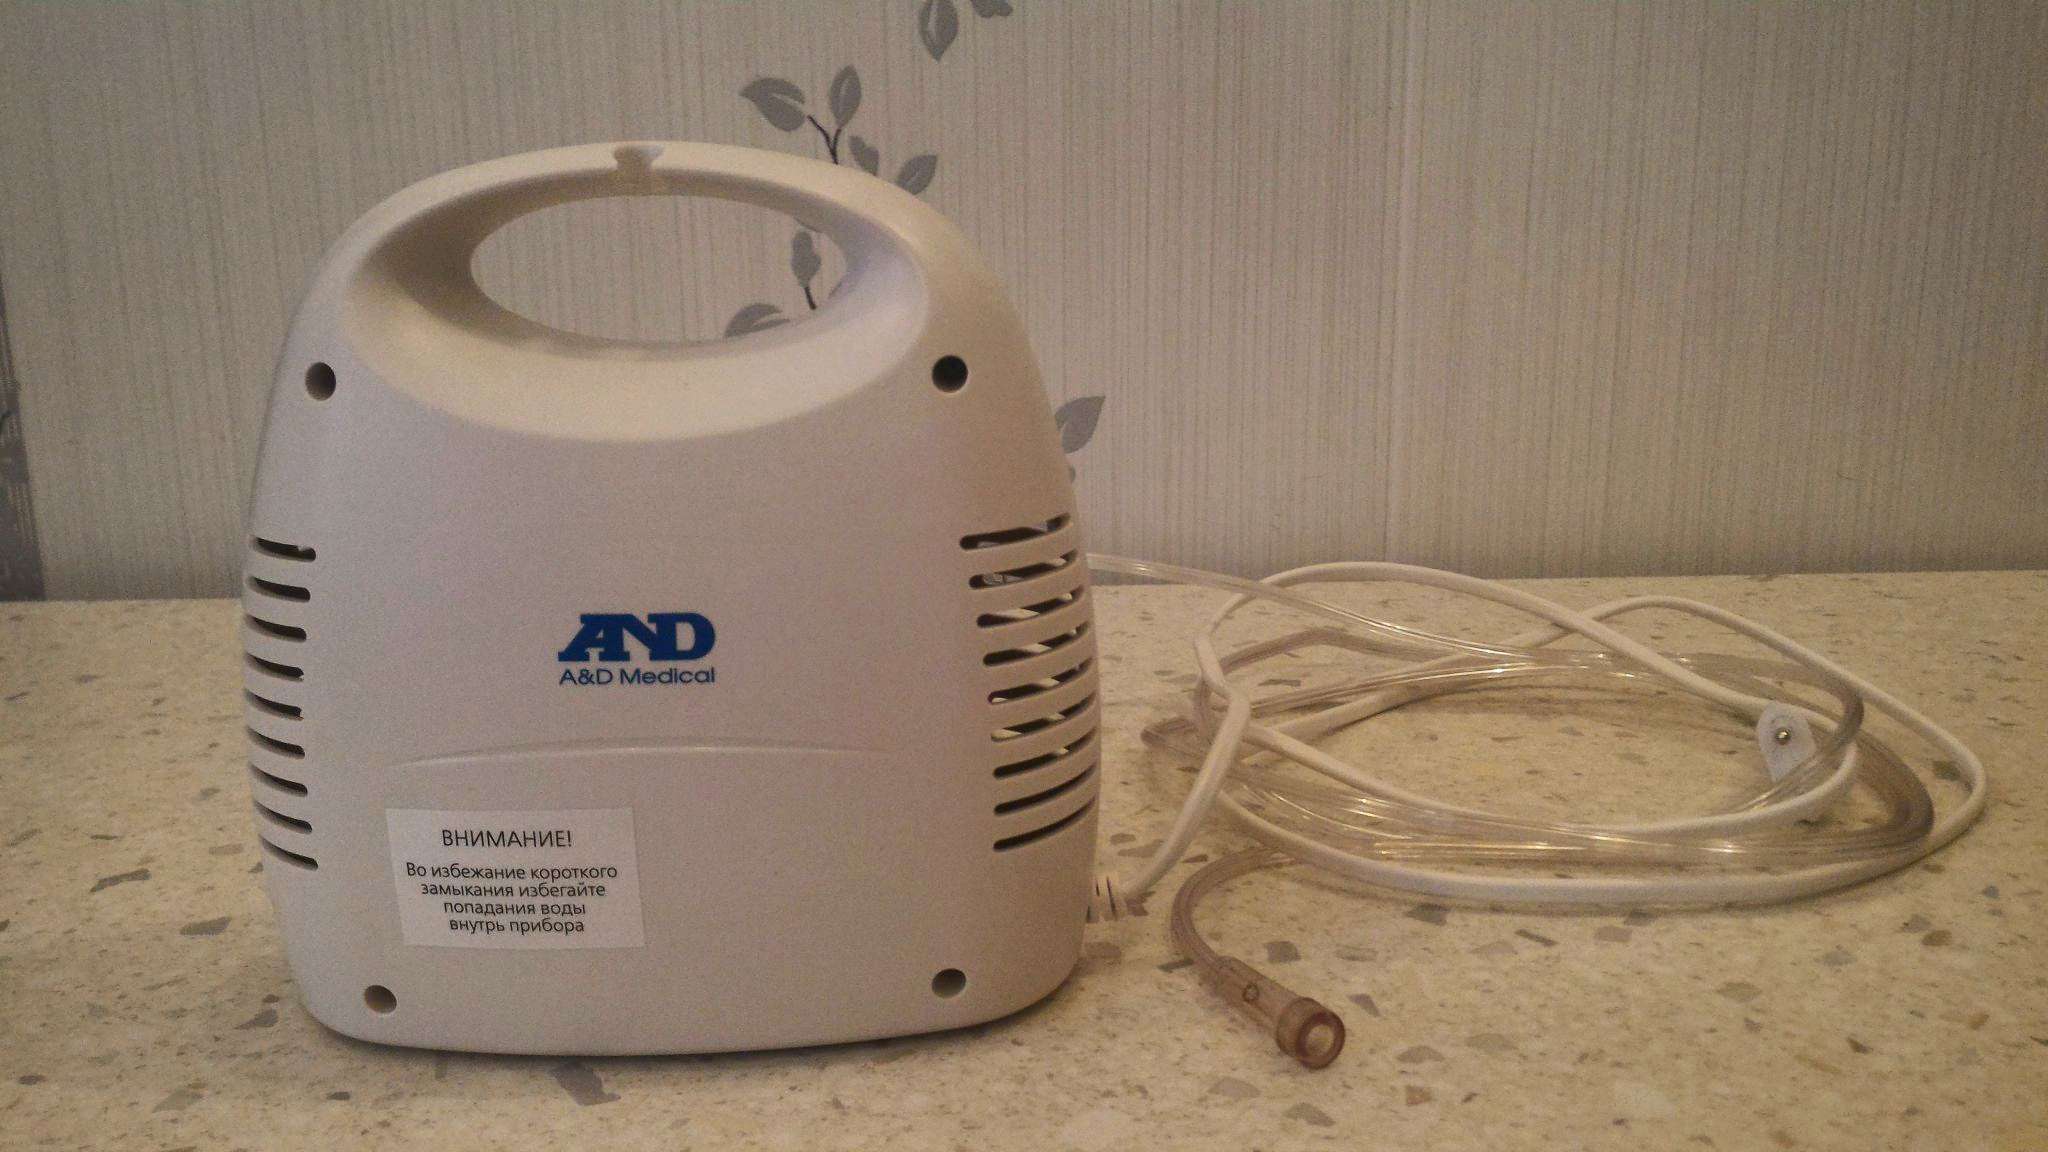 And ингалятор компрессорный cn 231 как пользоваться цена на ингалятор от астмы